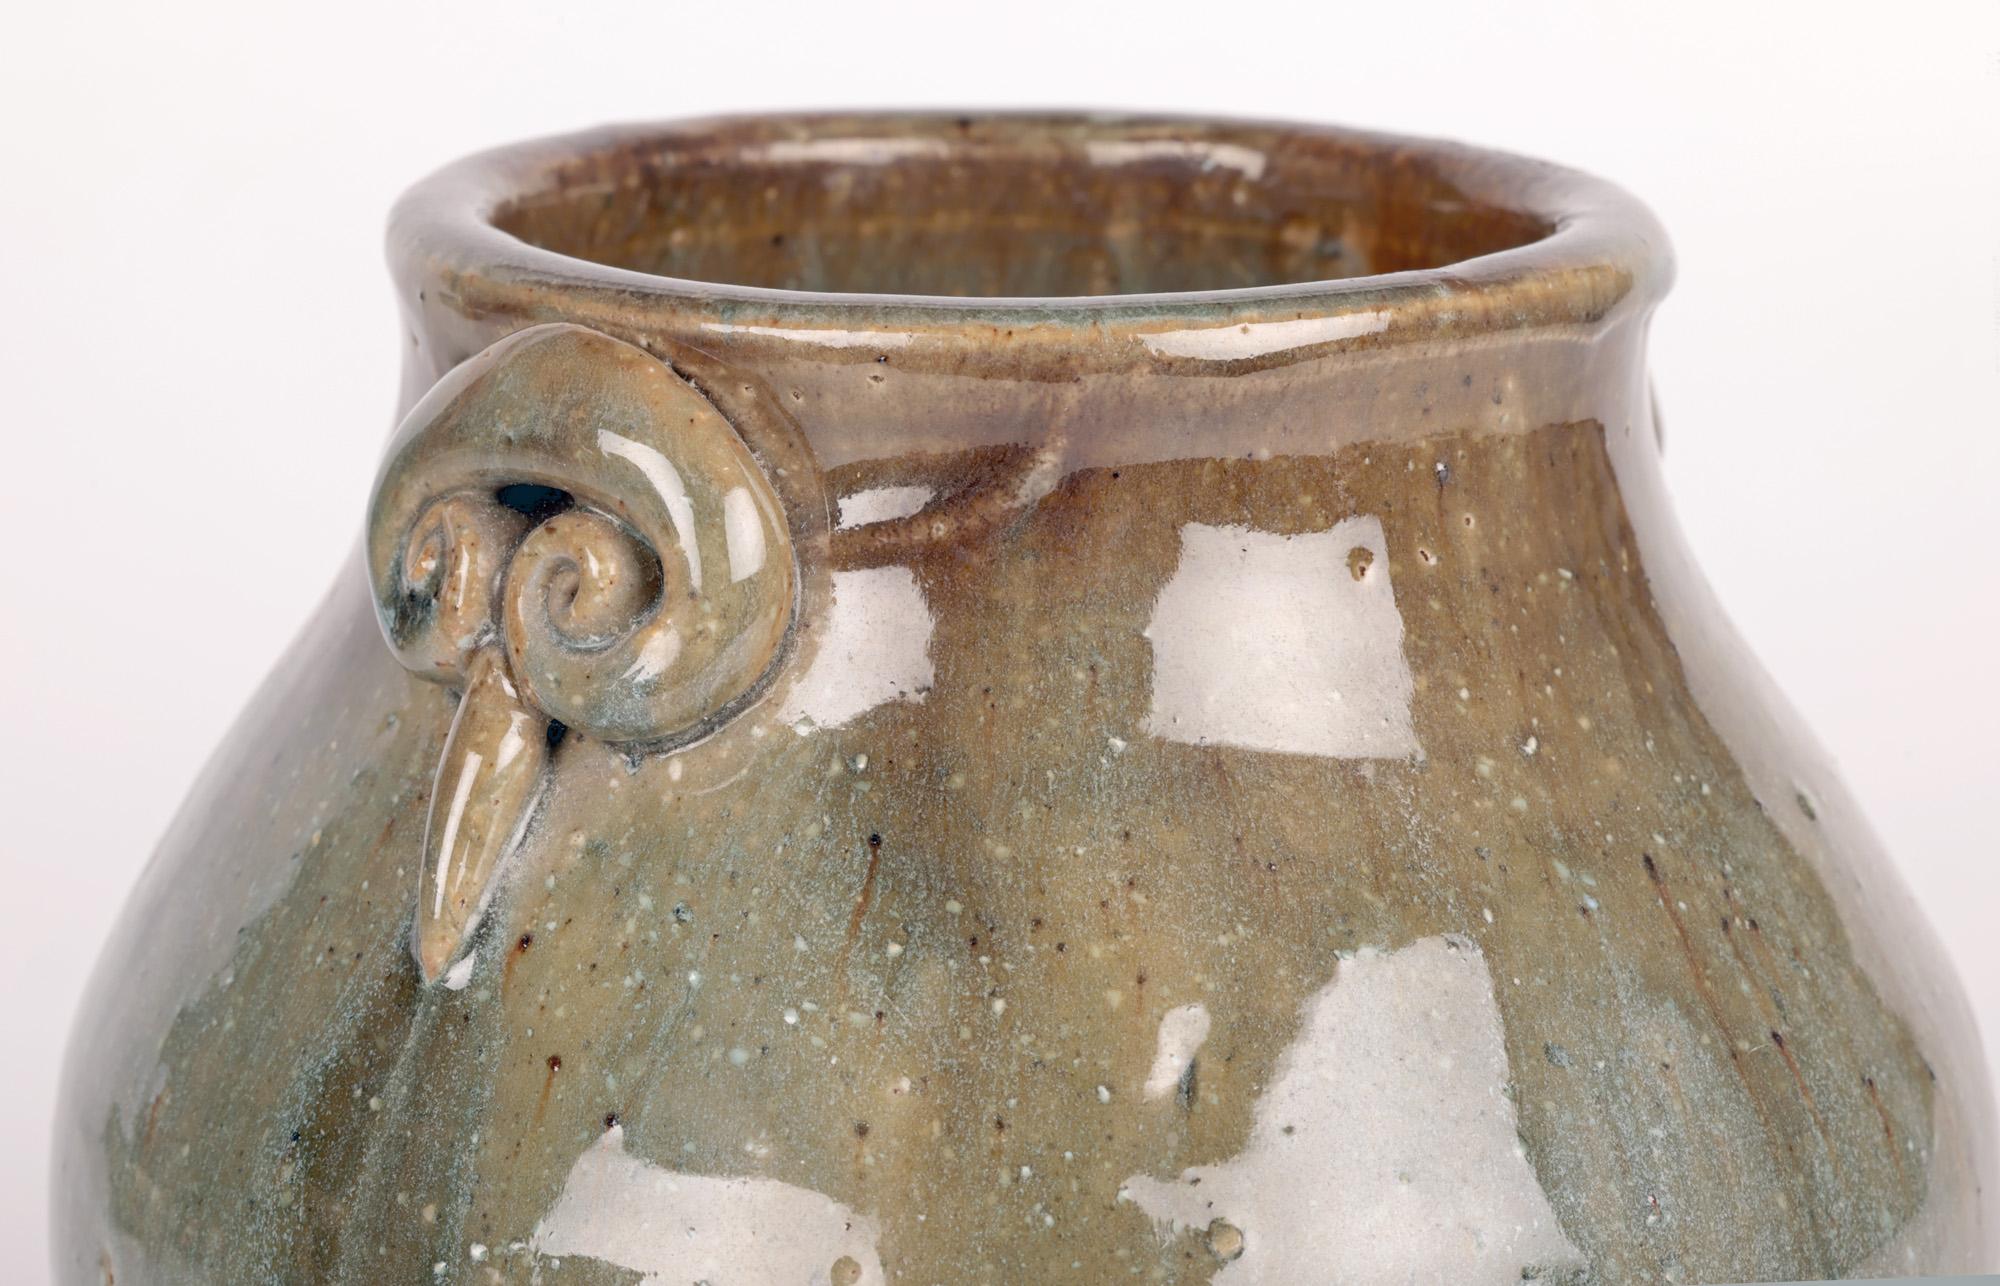 Un élégant et inhabituel vase à deux anses en poterie du studio Oxshott Pottery, réalisé par la célèbre potière Denise Wren (australienne, 1891-1979) et datant probablement d'environ 1950. Ce vase de fabrication artisanale repose sur une base plate